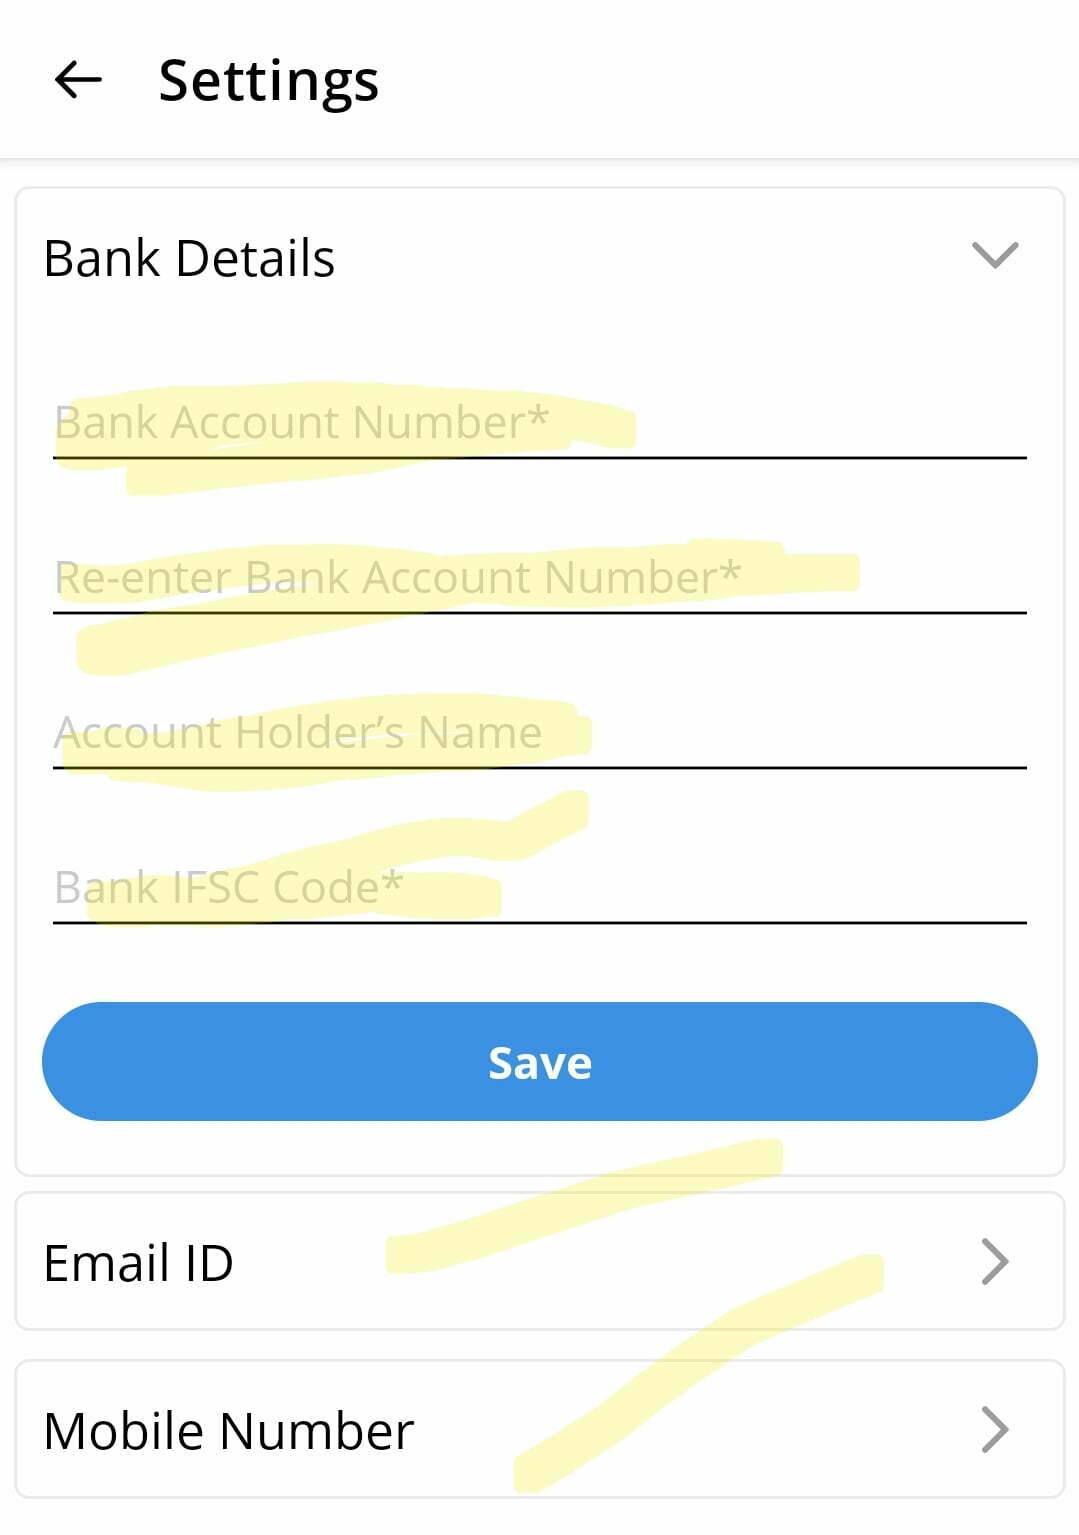 GlowRoad App में अपना Bank Account कैसे जोड़ 